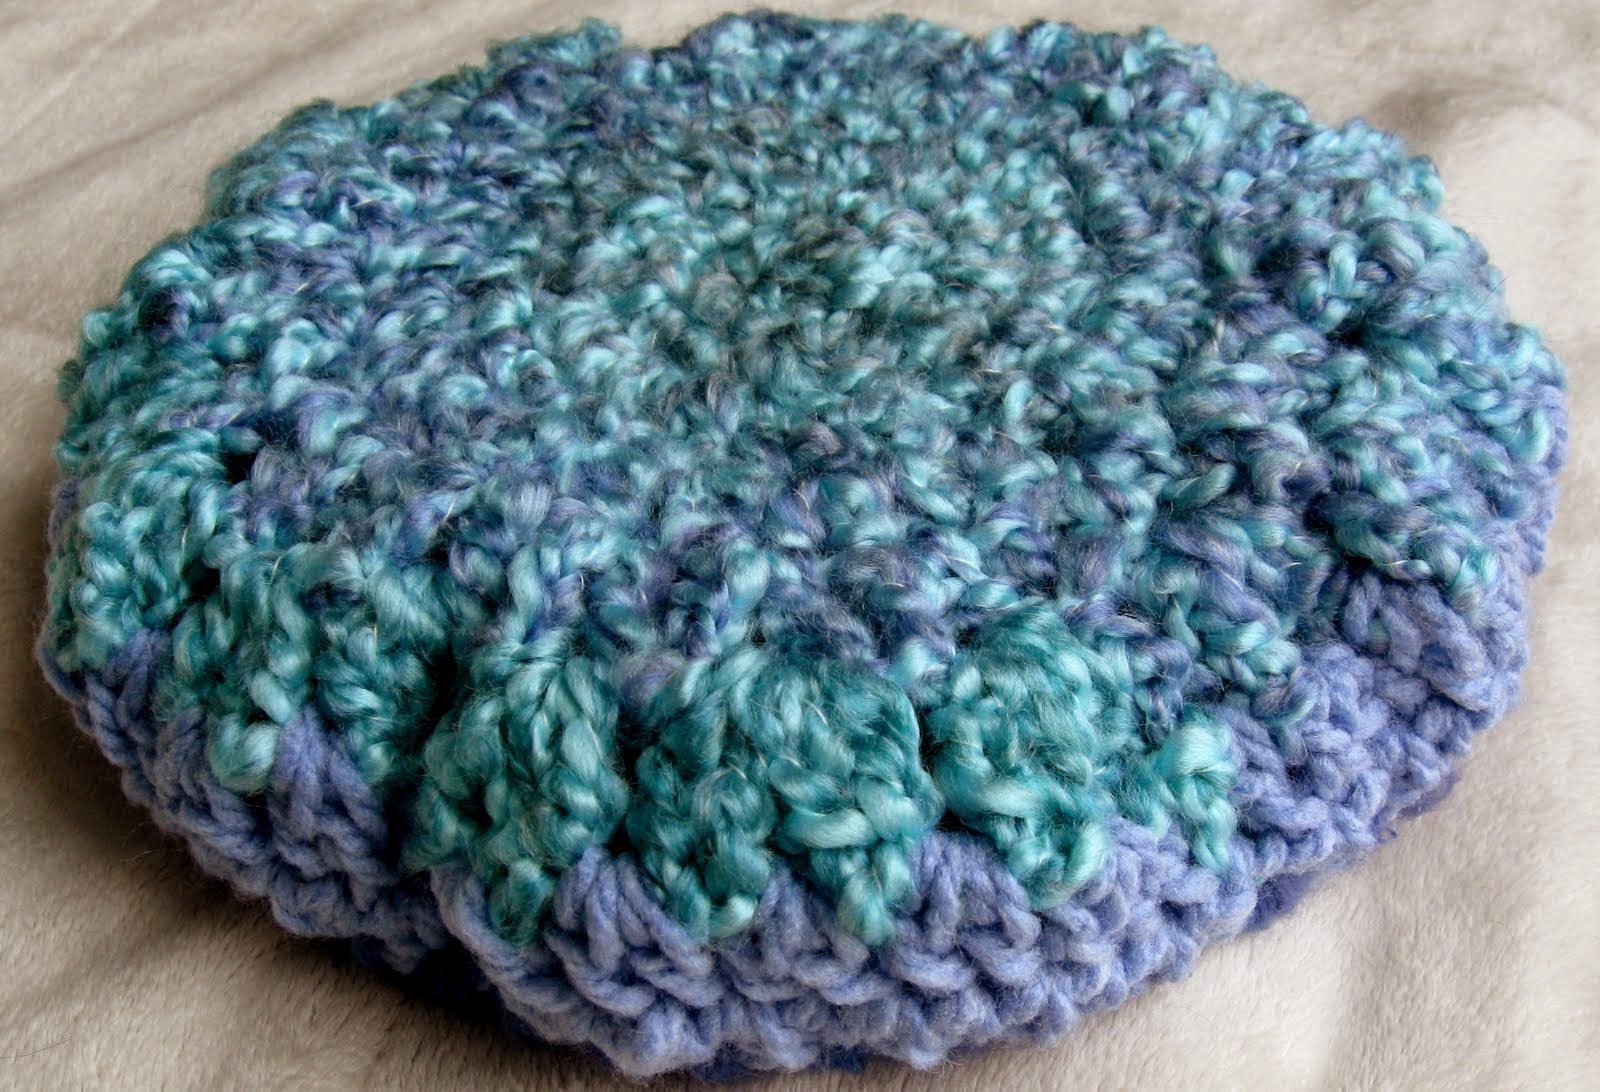 Slouchy Beret Crochet Pat
tern | AllFreeCrochet.com